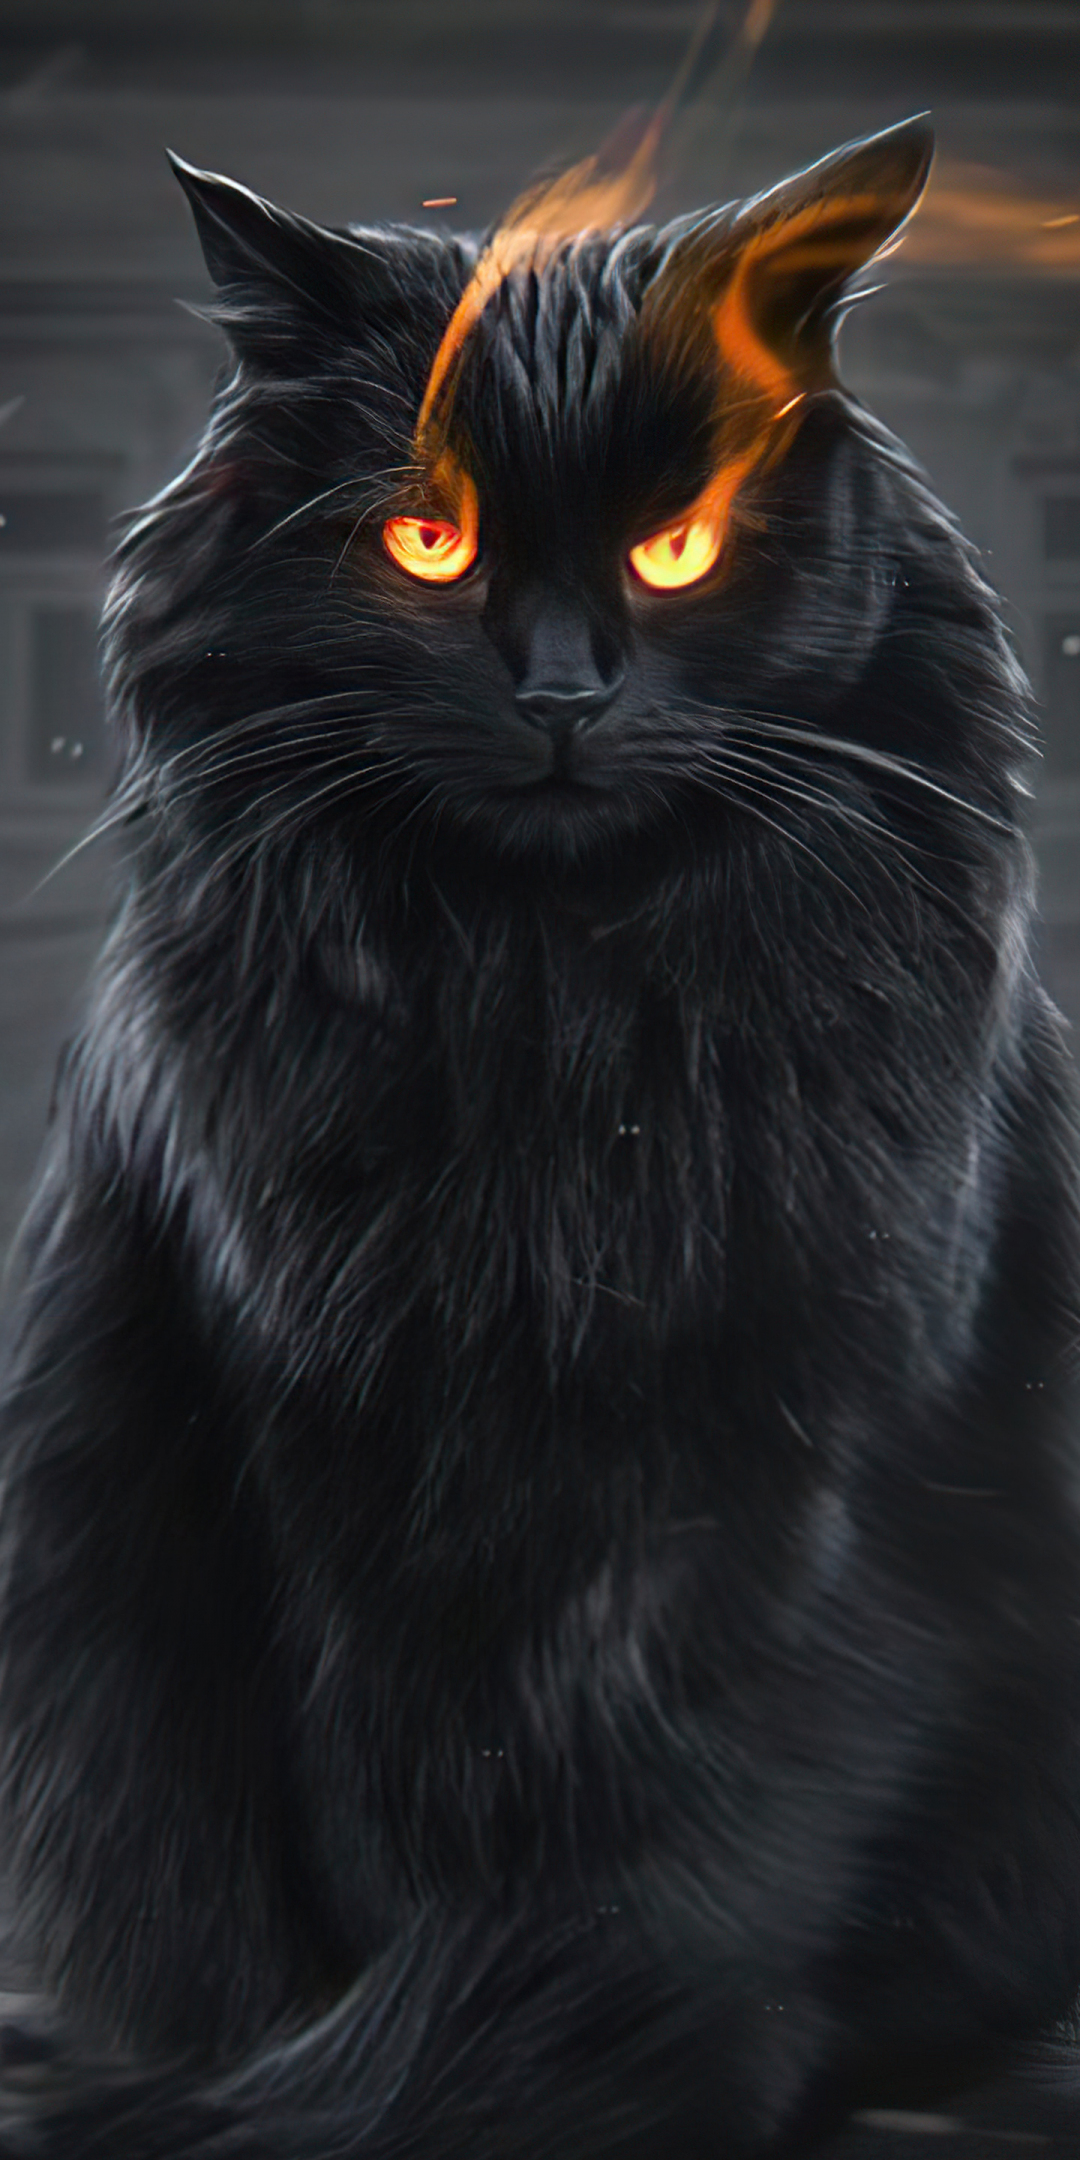 Black cat, fire eyes, fantasy, 1080x2160 wallpaper